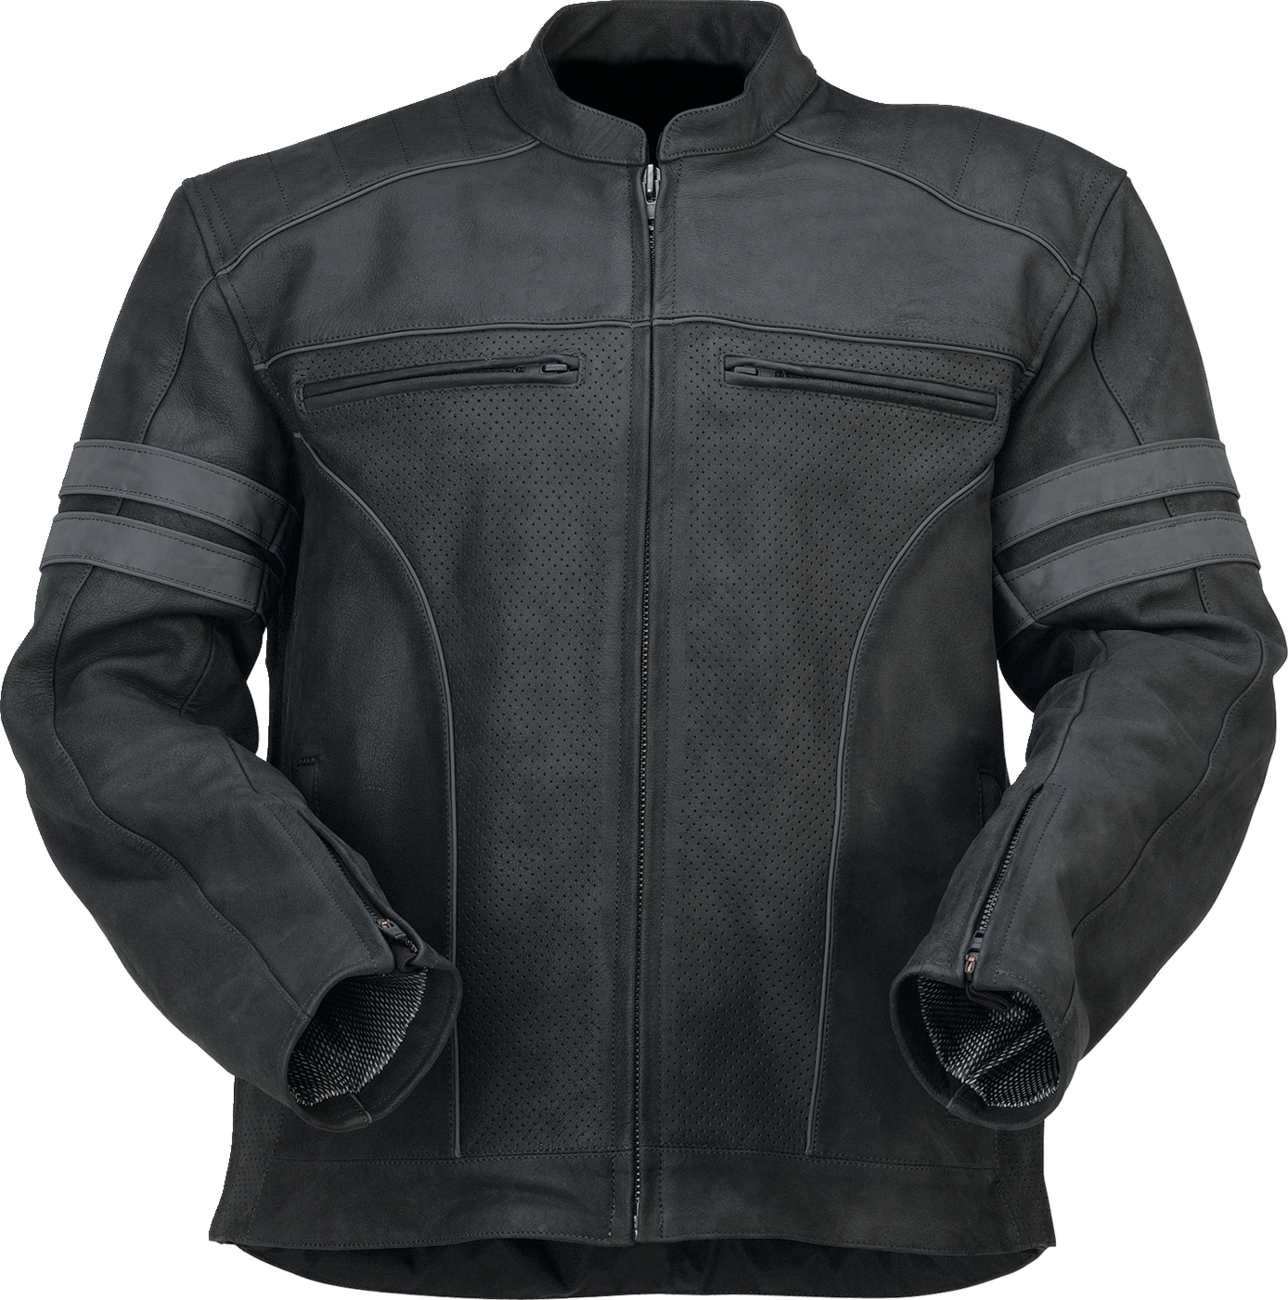 Z1R Remedy Leather Jacket - Black - 3XL 2810-3894